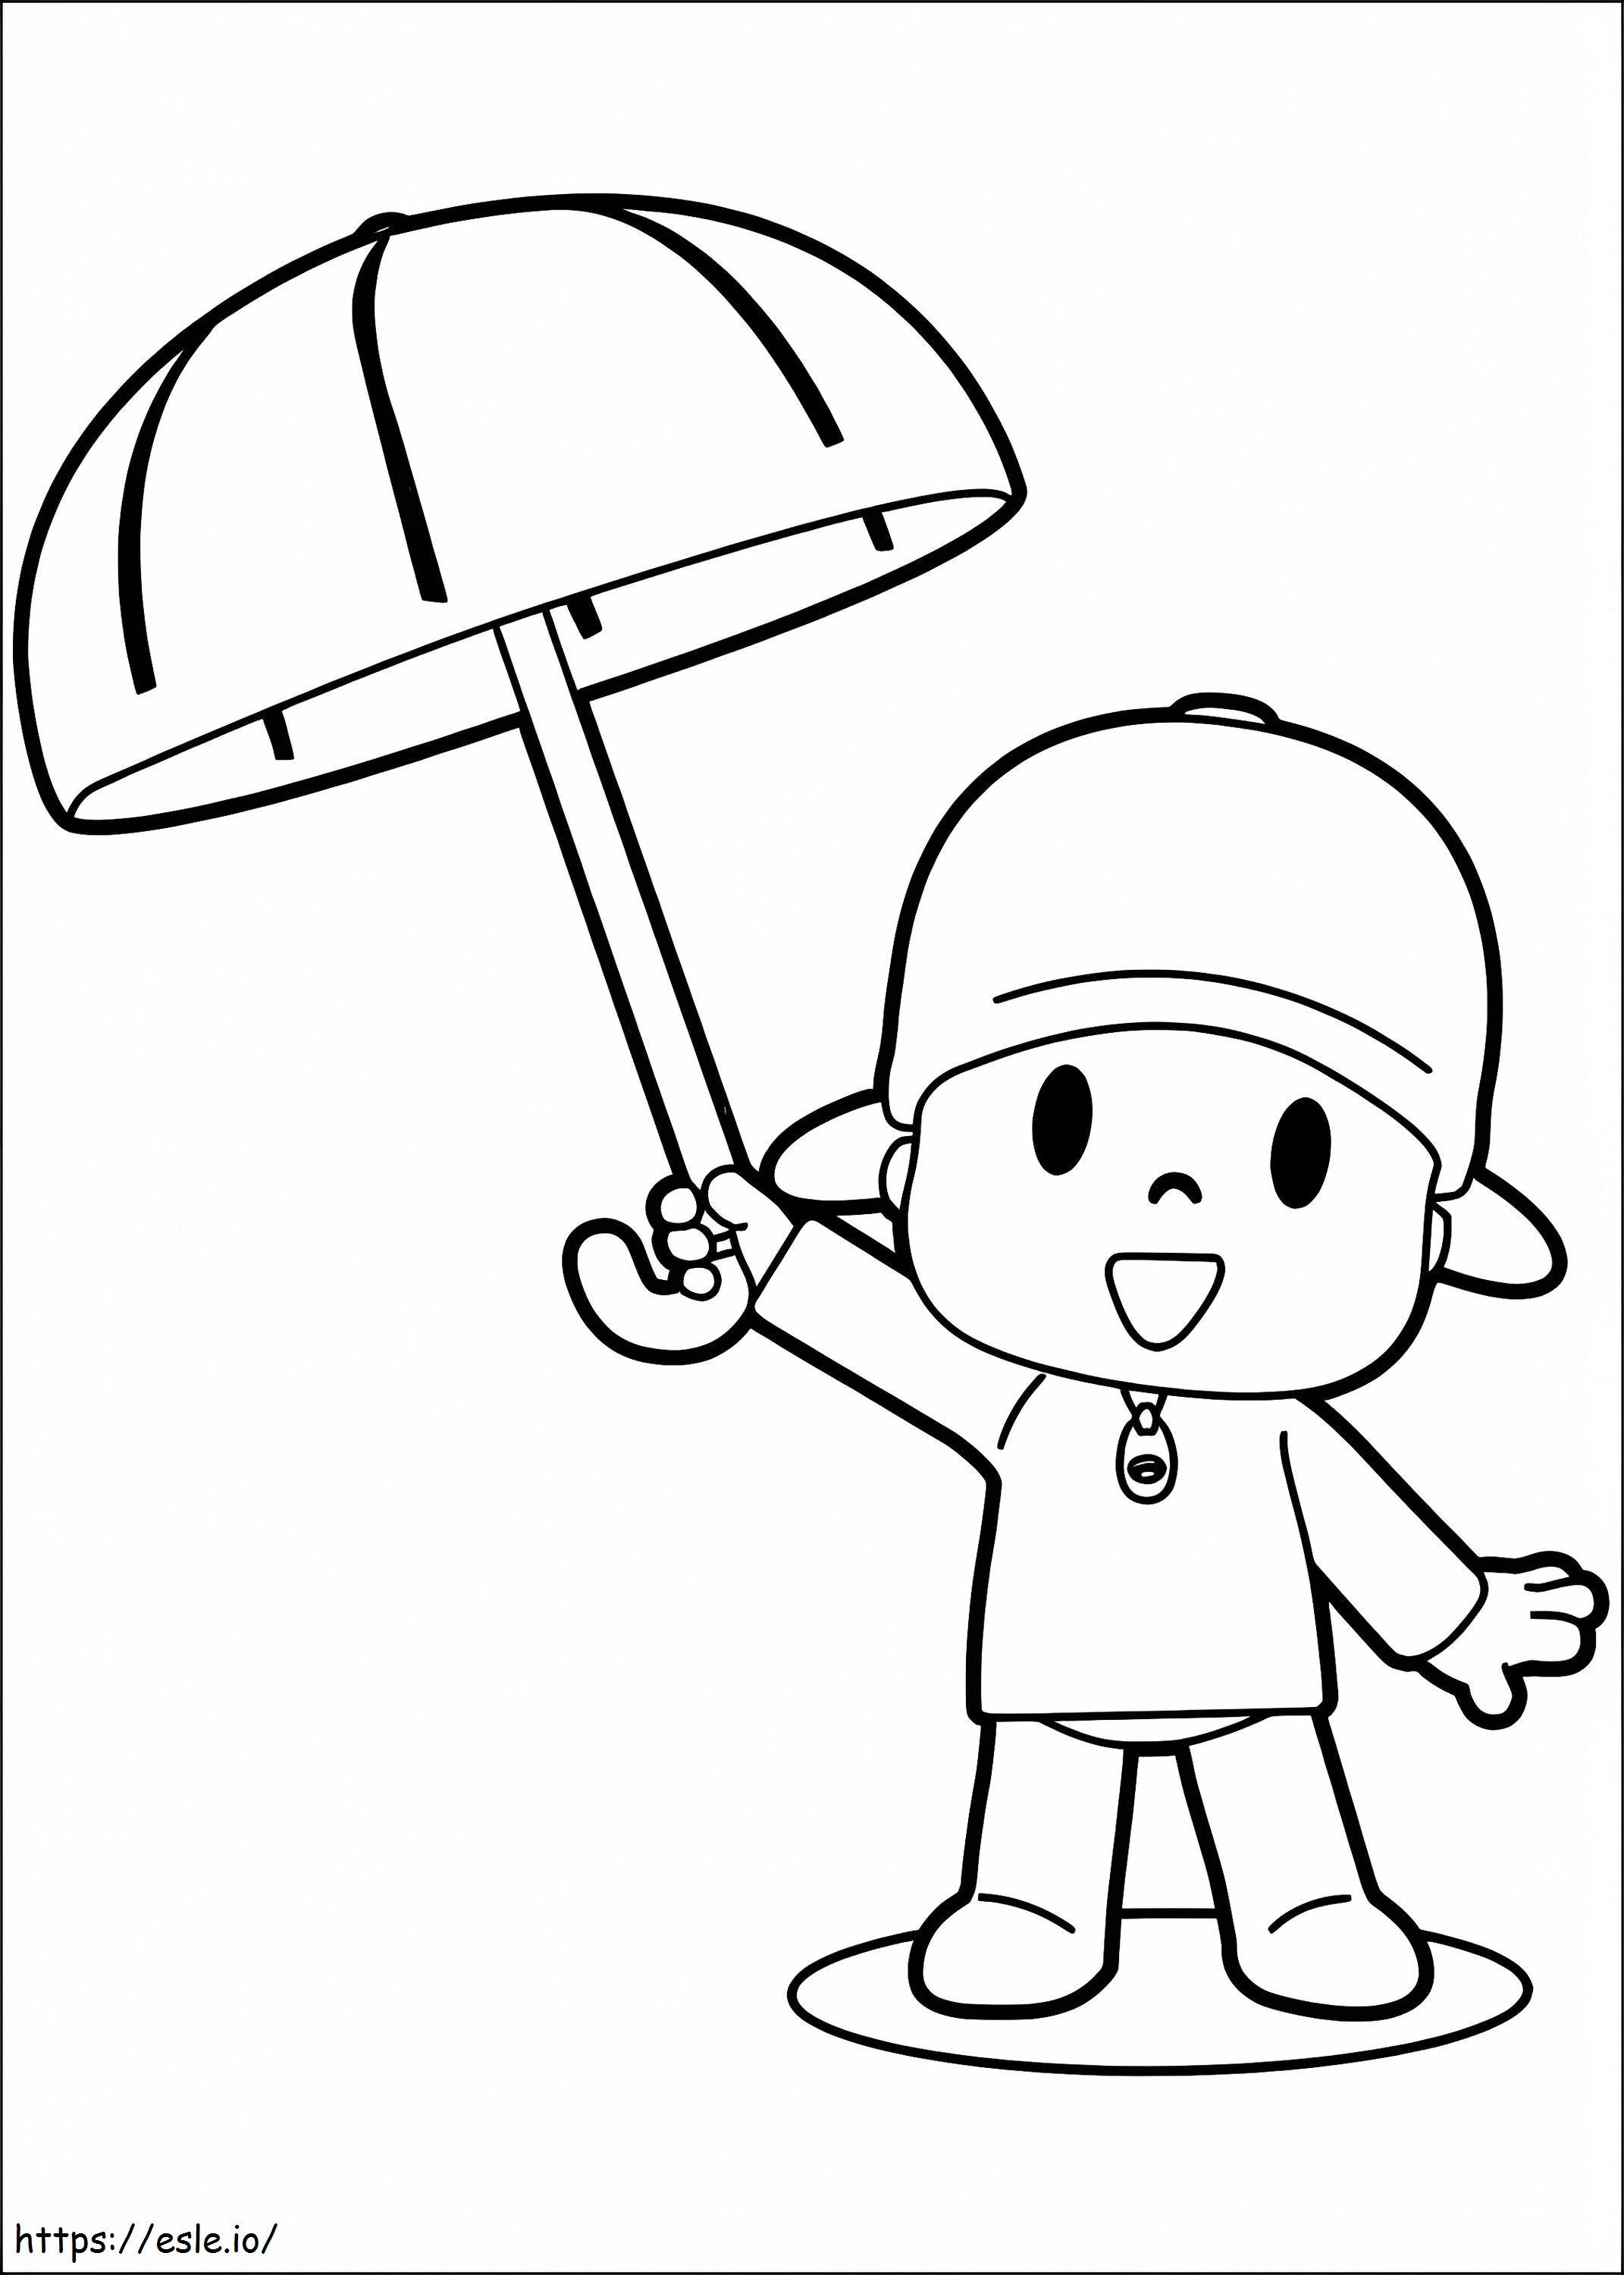 Pocoyo With Umbrella coloring page